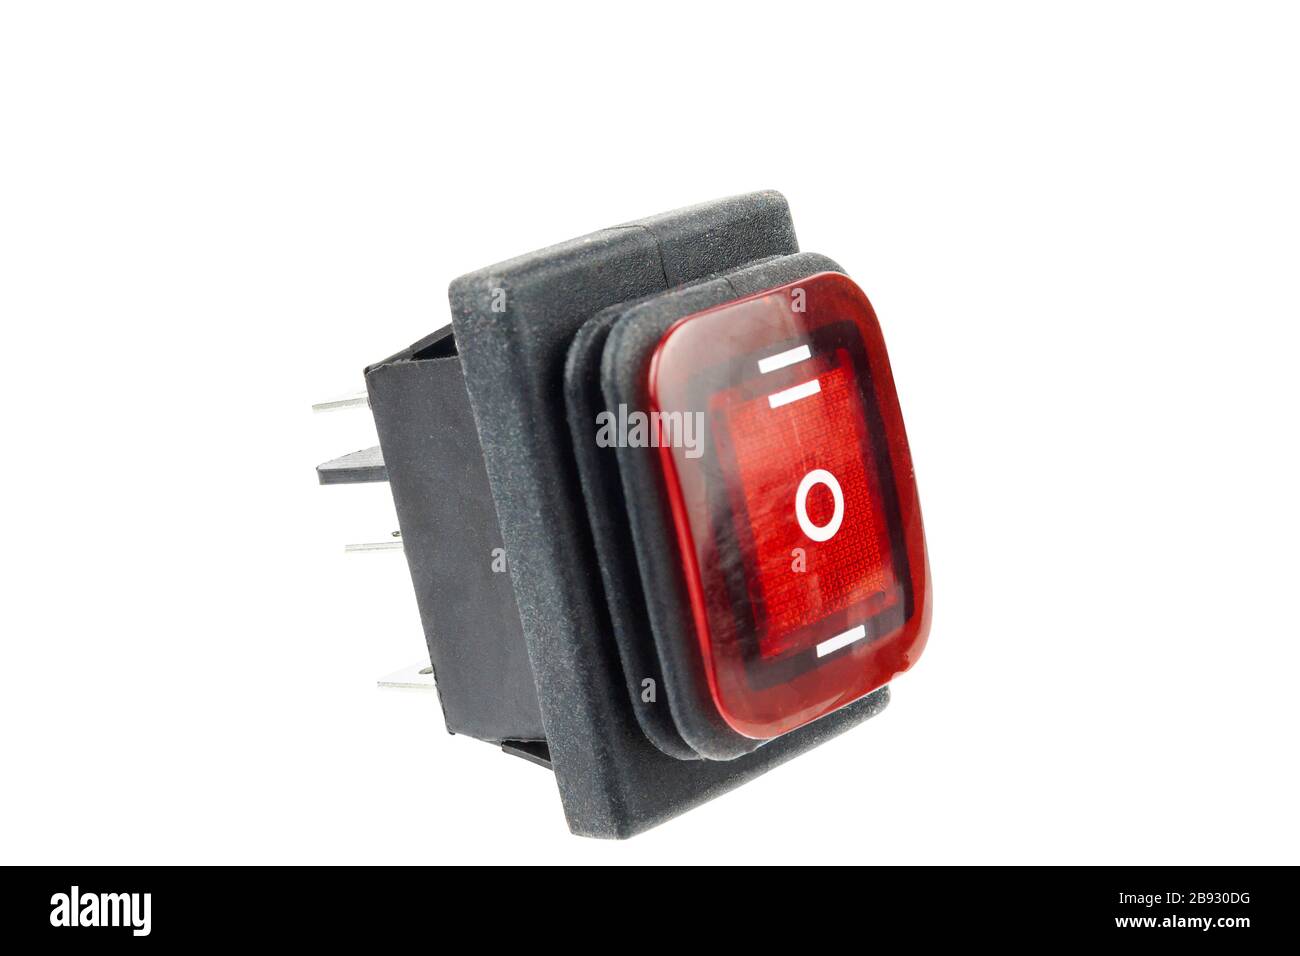 interrupteur électronique à trois positions avec rétroéclairage rouge sur fond blanc, isoler Banque D'Images